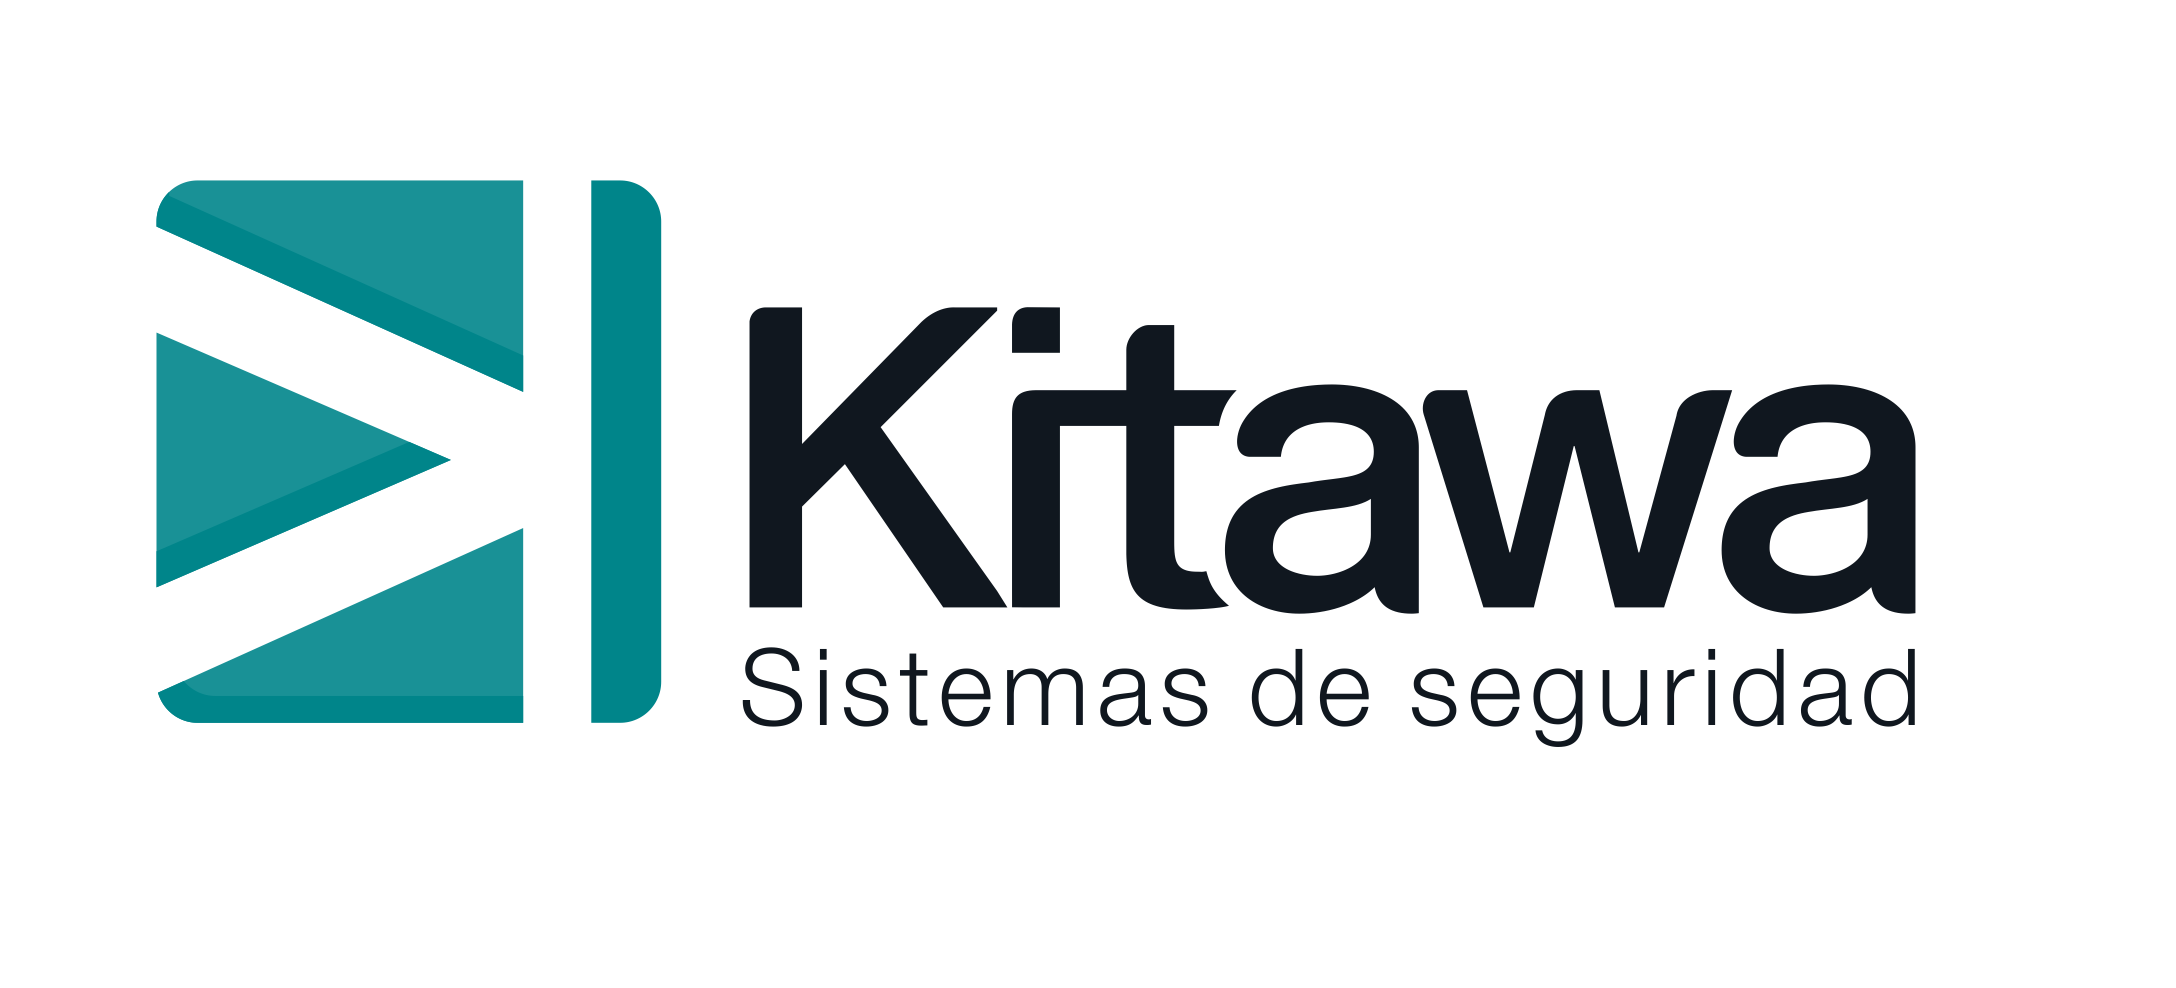 KITAWA SISTEMAS DE SEGURIDAD